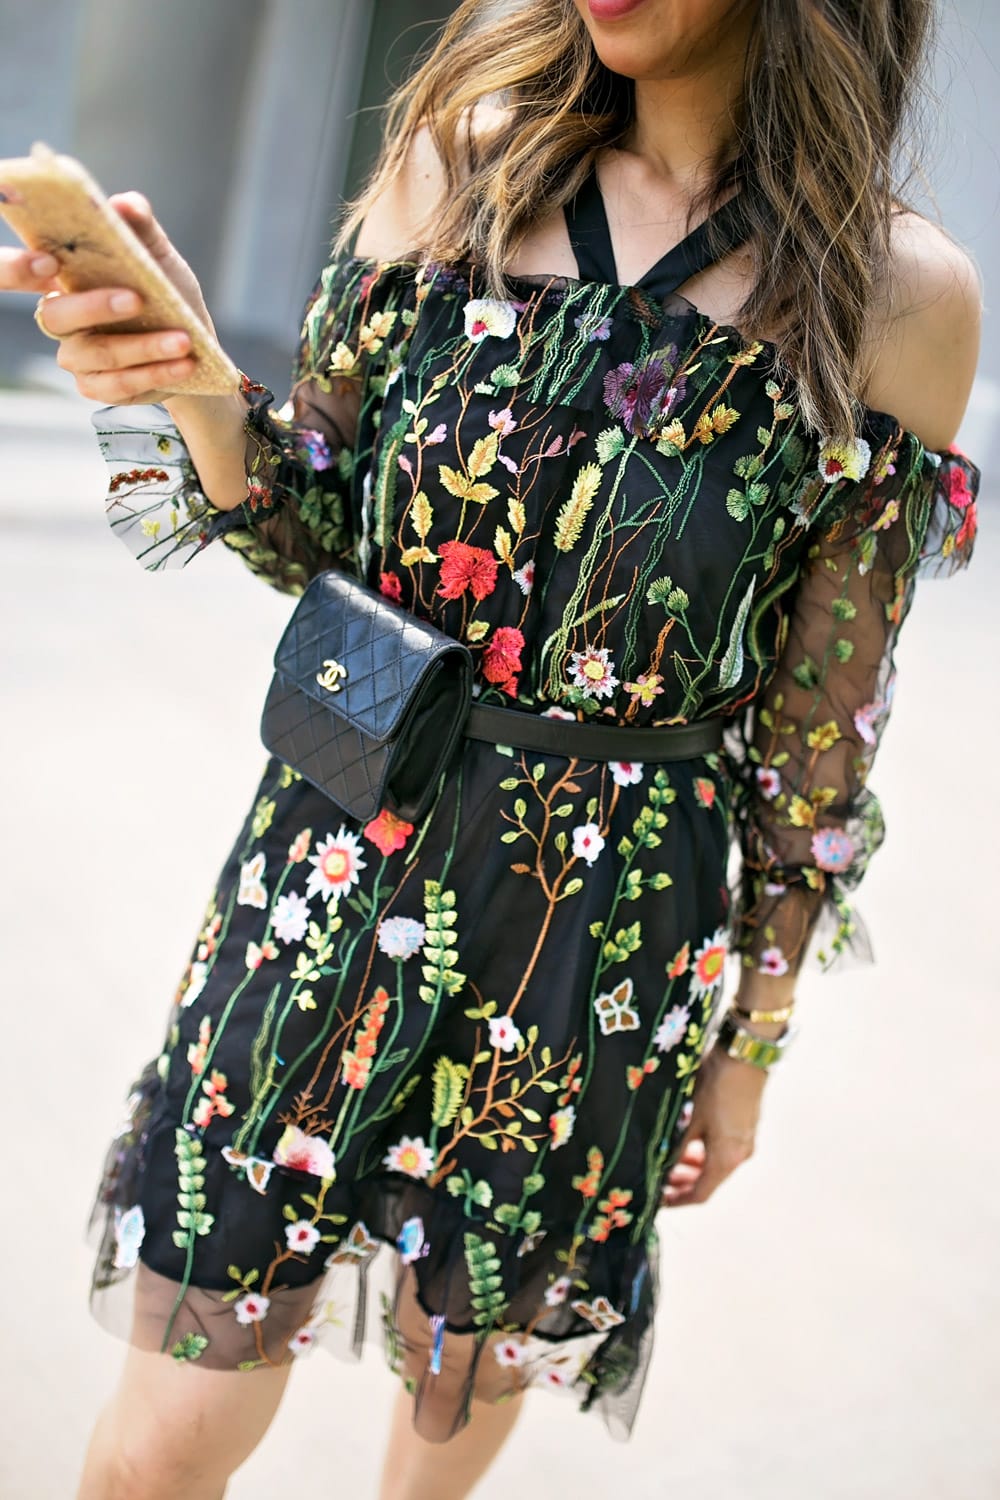 dark floral trend off the shoulder embroidered dress chanel waist bag